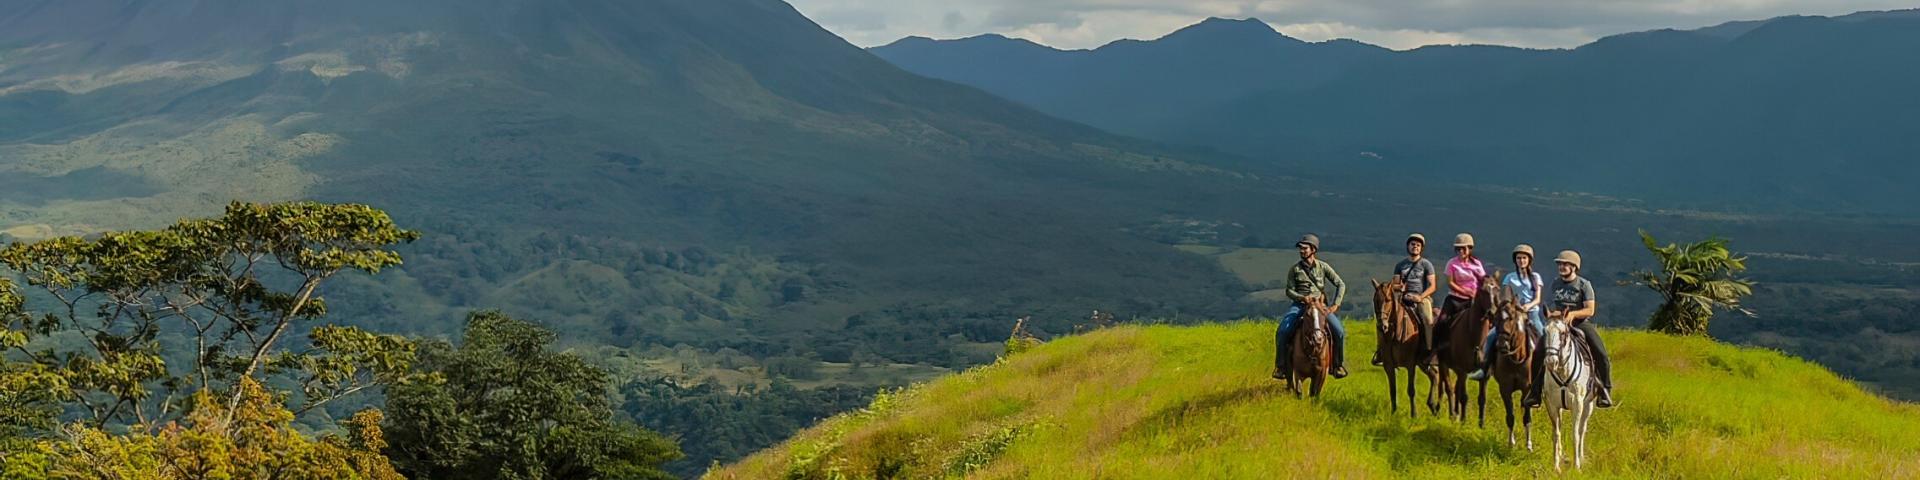 Wycieczka konna w okolicach wulkanu Arenal